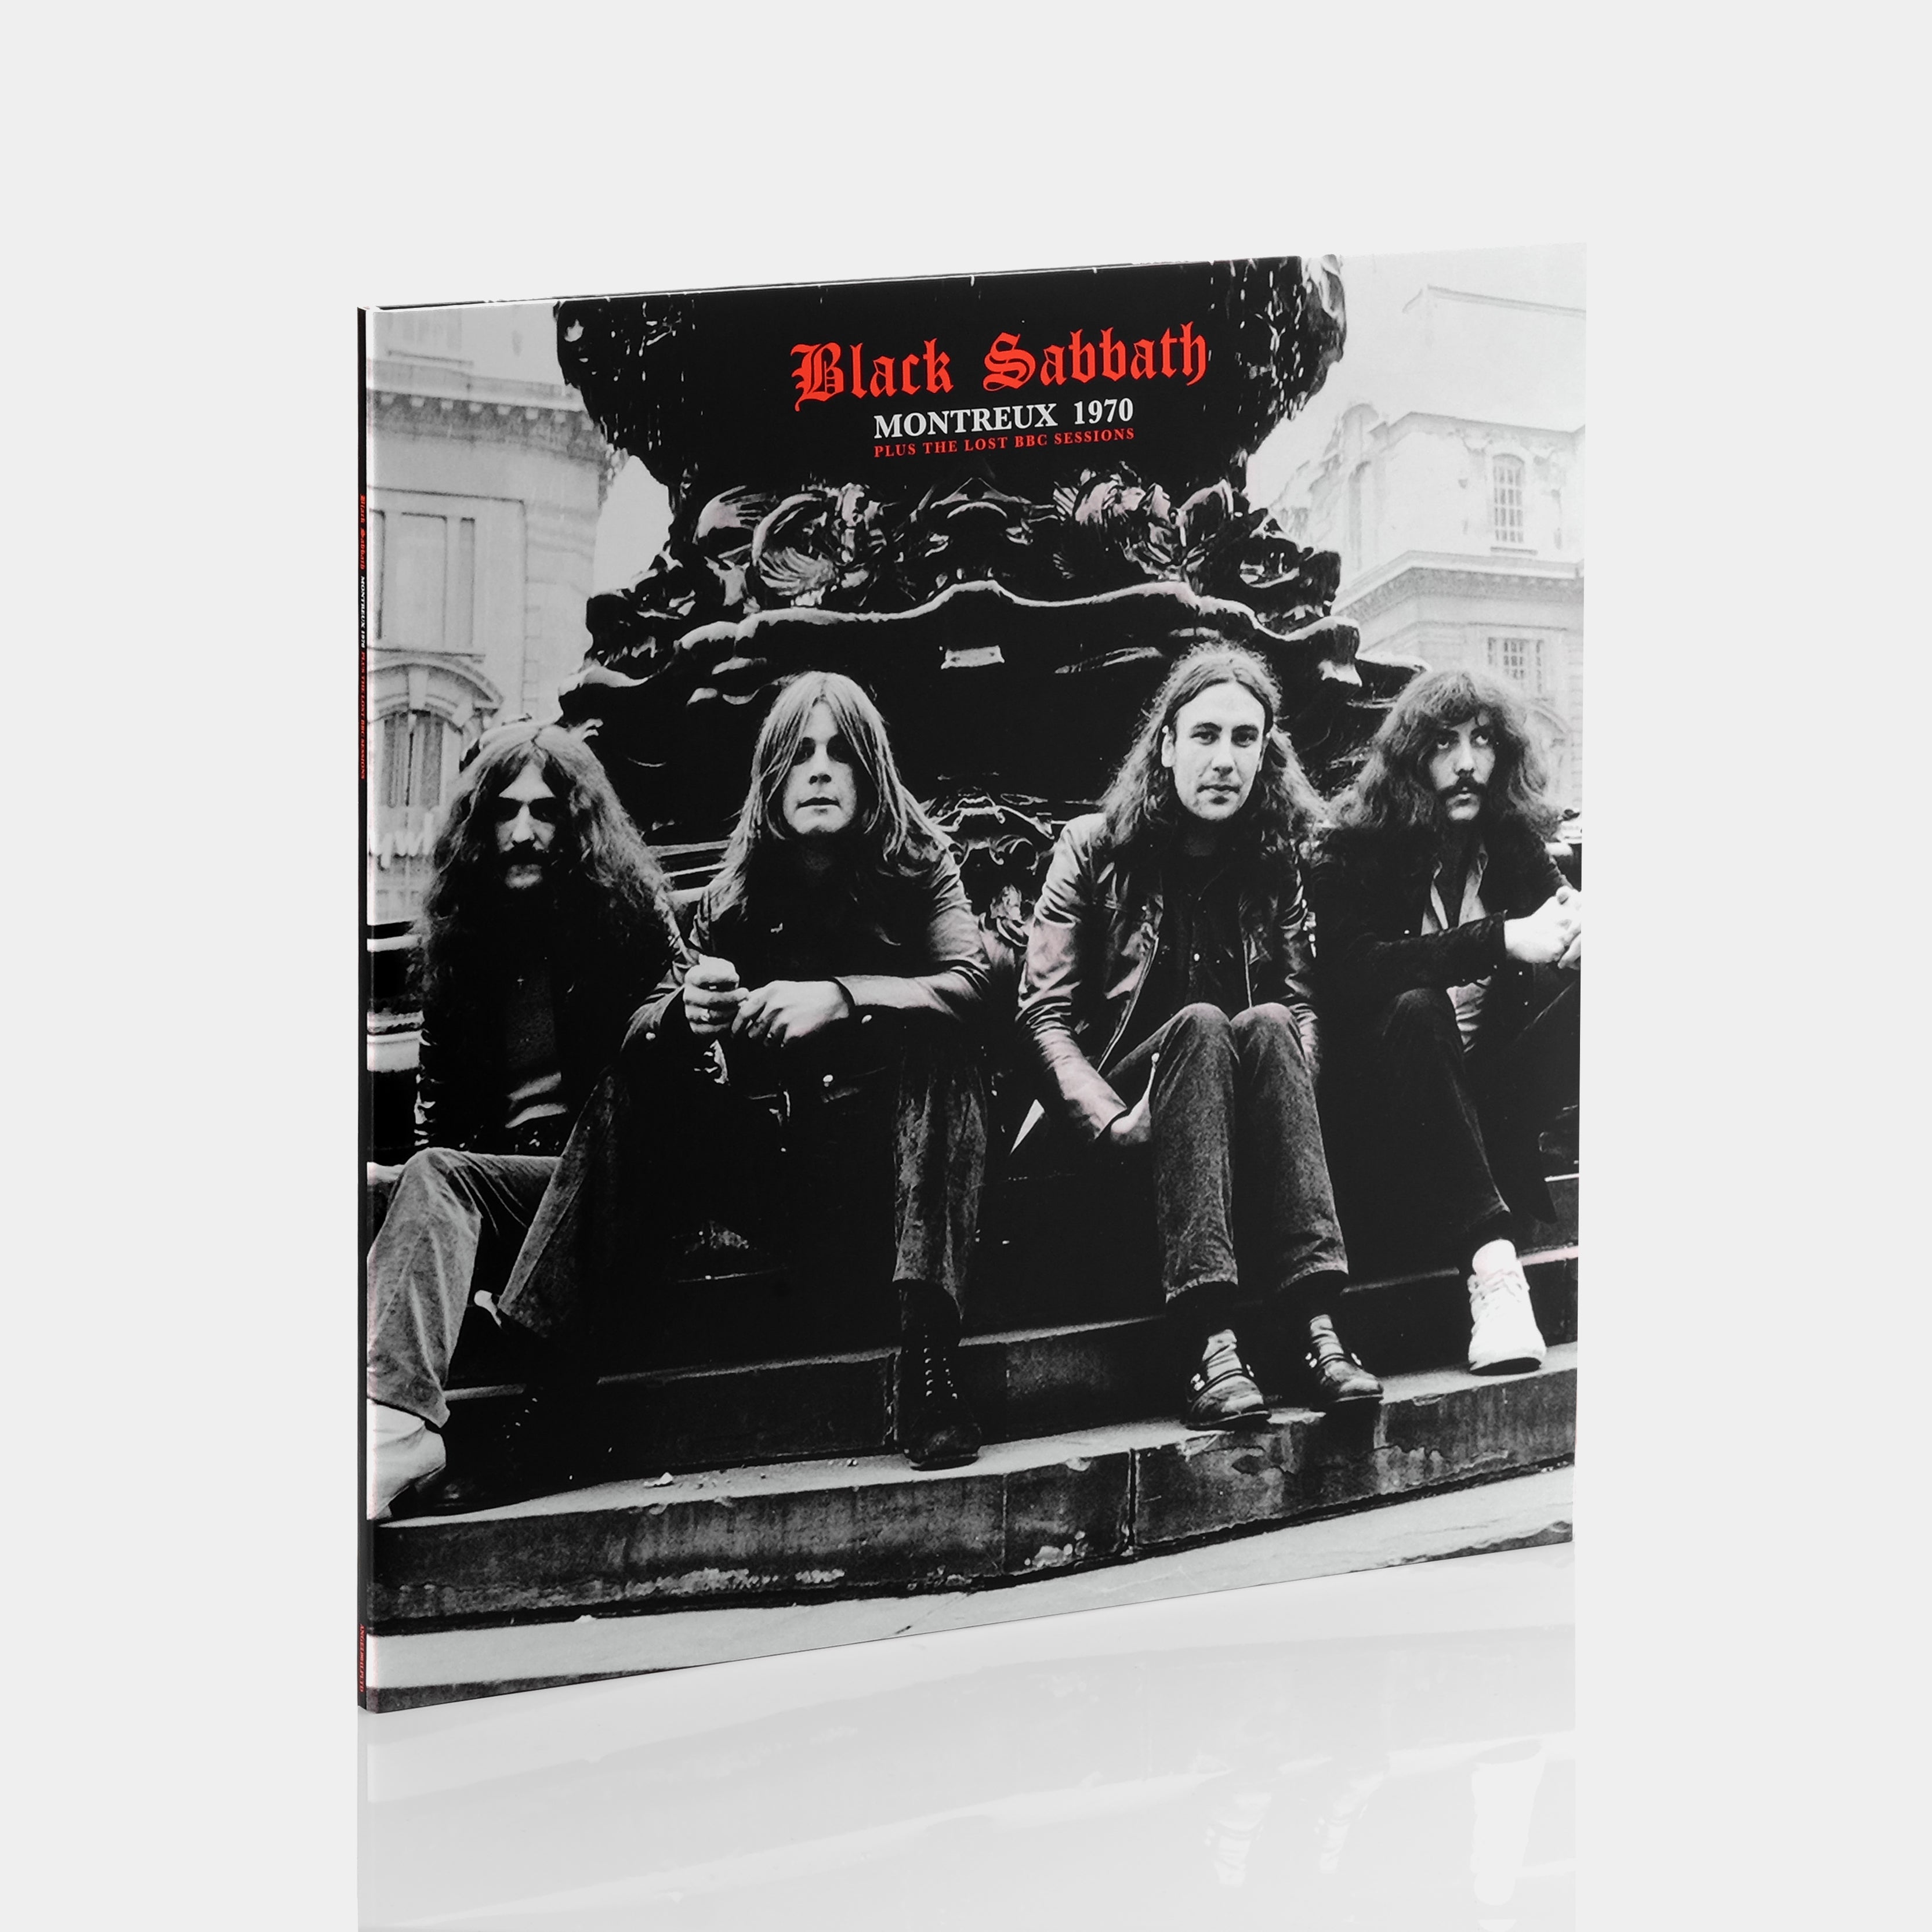 Black Sabbath - Montreux 1970 Plus The Lost BBC Sessions 2xLP Clear/Red Splatter Vinyl Record